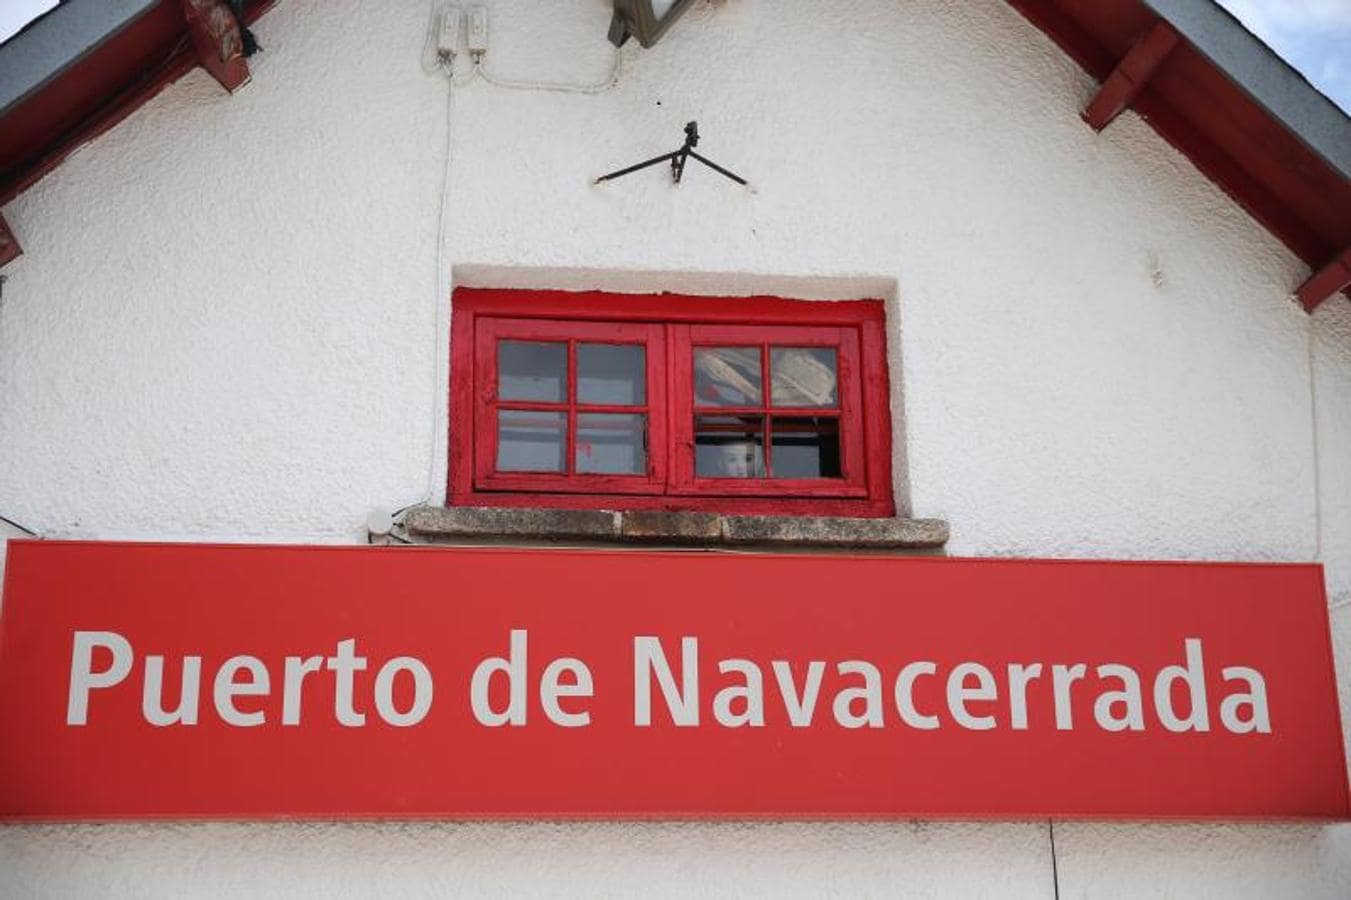 1. Estación de cercanías del Puerto de Navacerrada